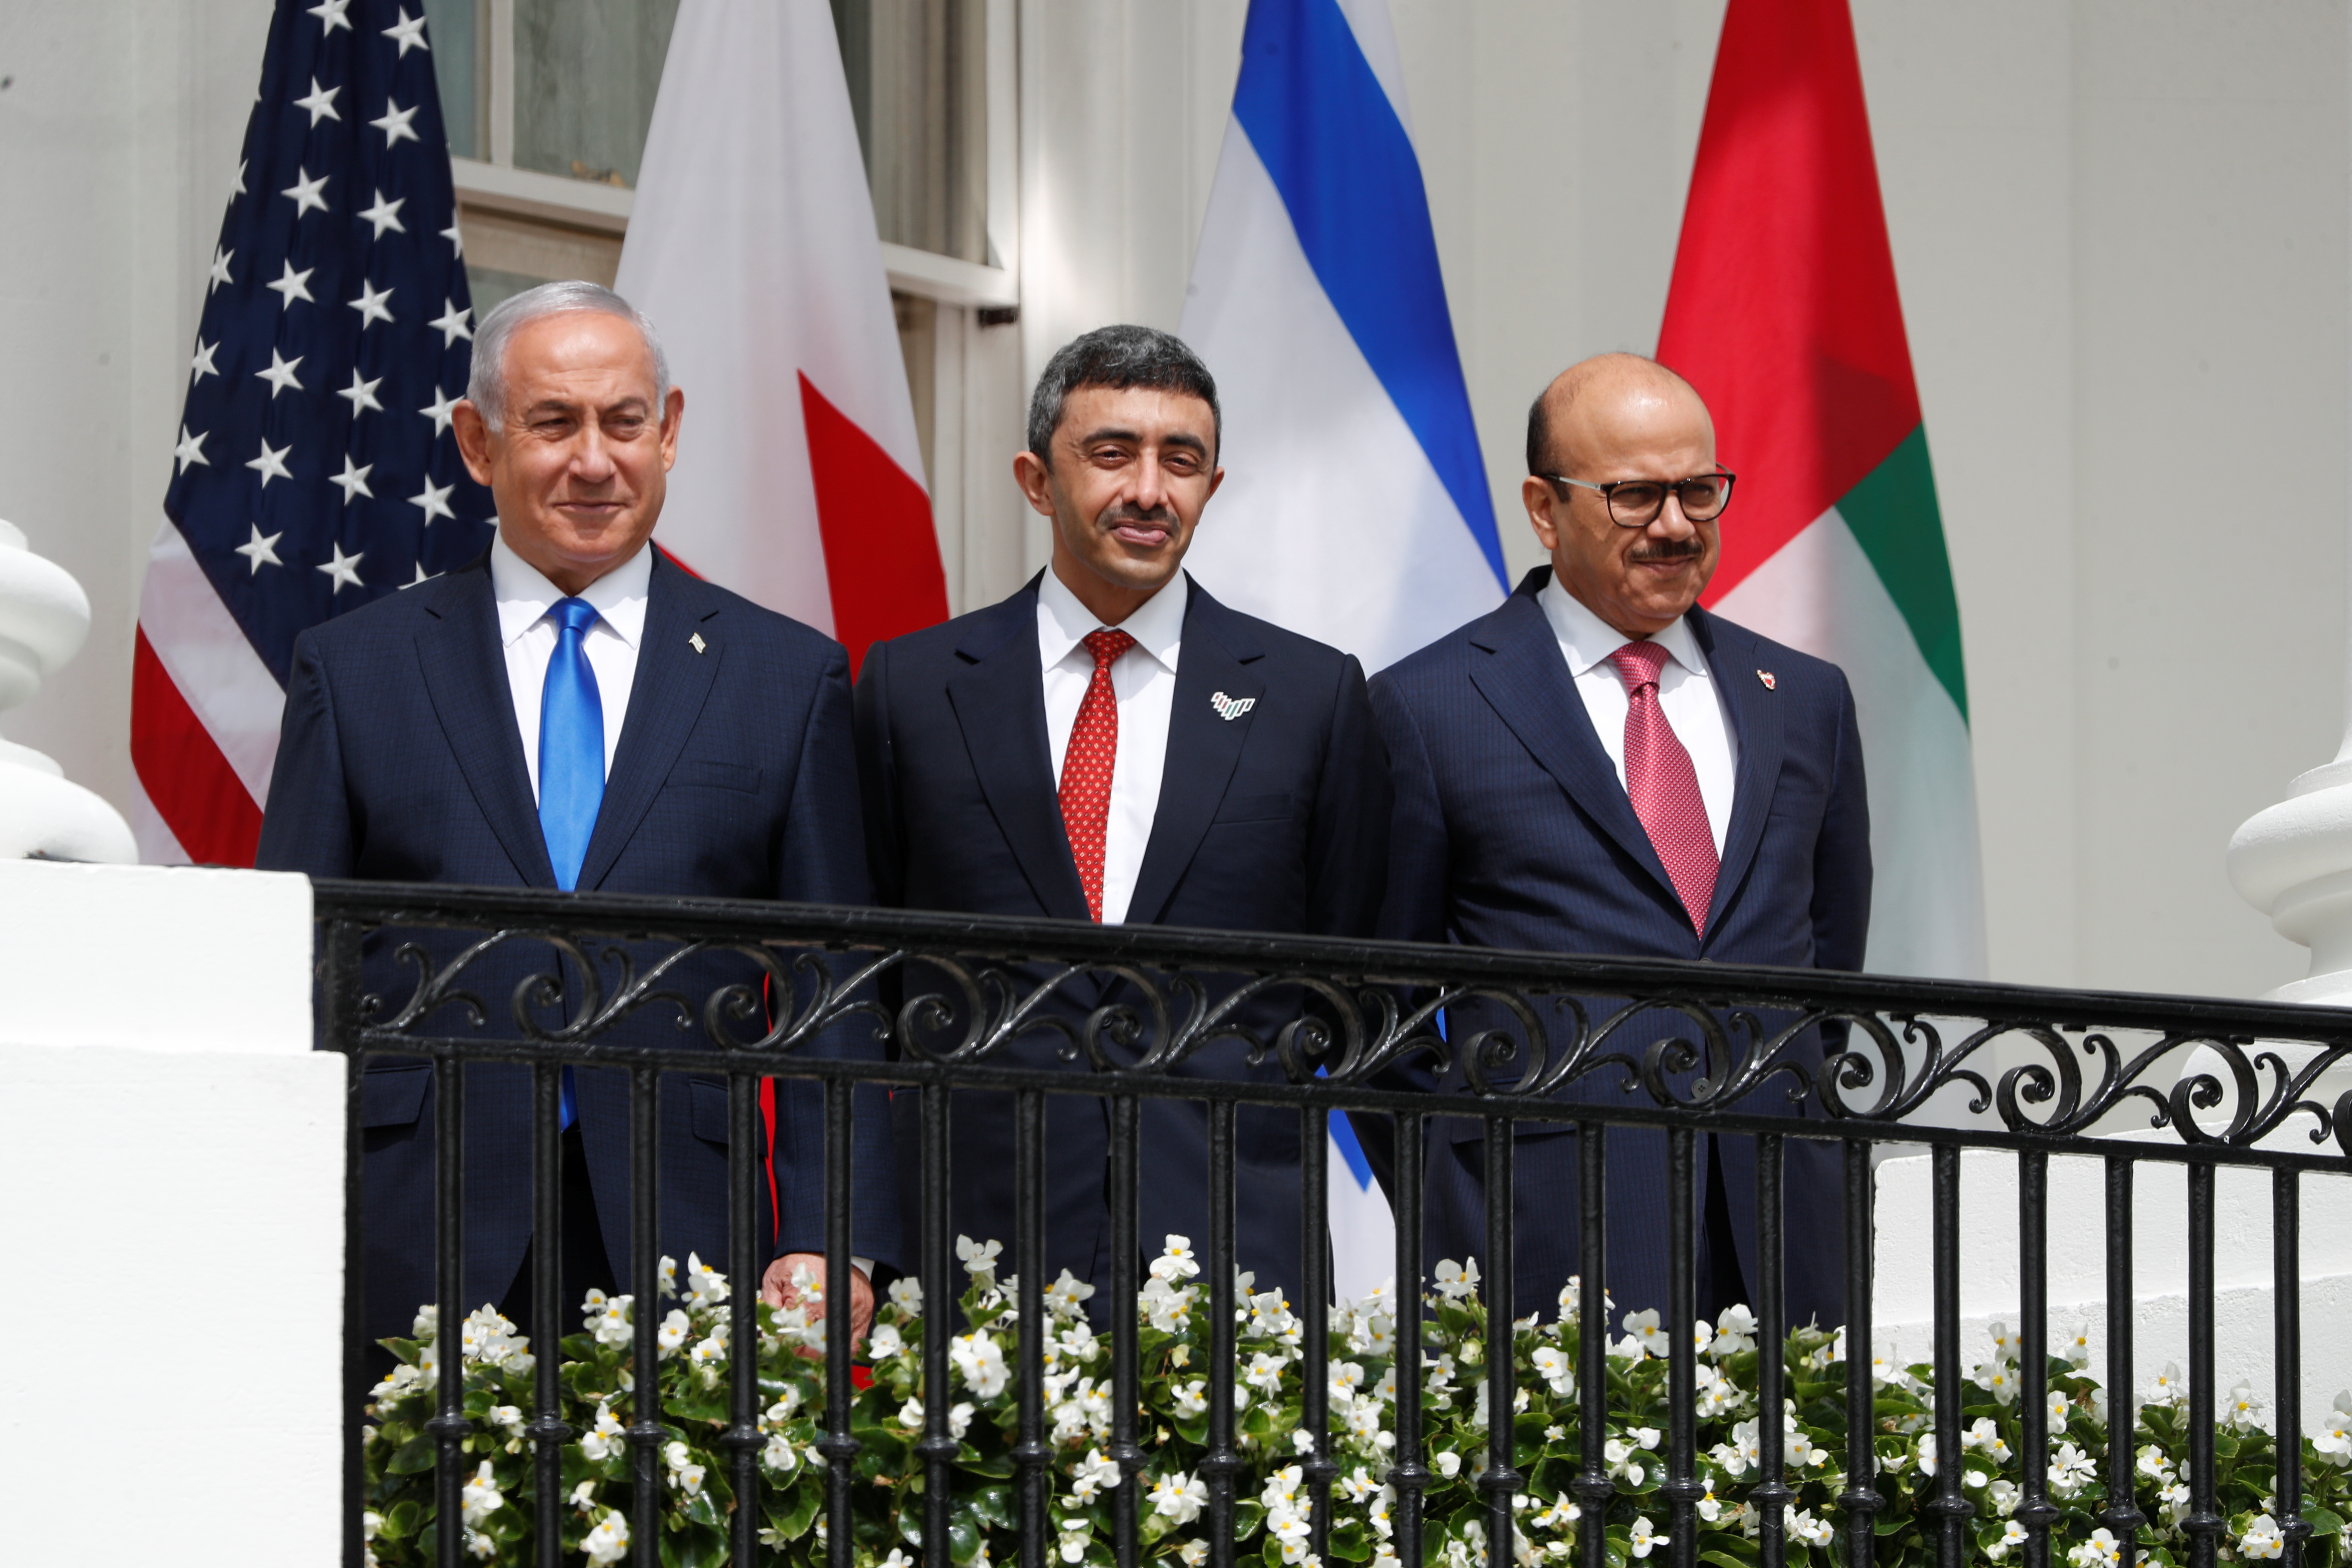 El ex primer ministro de Israel, Benjamin Netanyahu, junto al Canciller de Emiratos Árabes Unidos Abdullah bin Zayed y el ministro de Exteriores de Bahrein Abdullatif Al Zayani en la Casa Blanca, Washington, el 15 de septiembre de 2020 (Reuters)